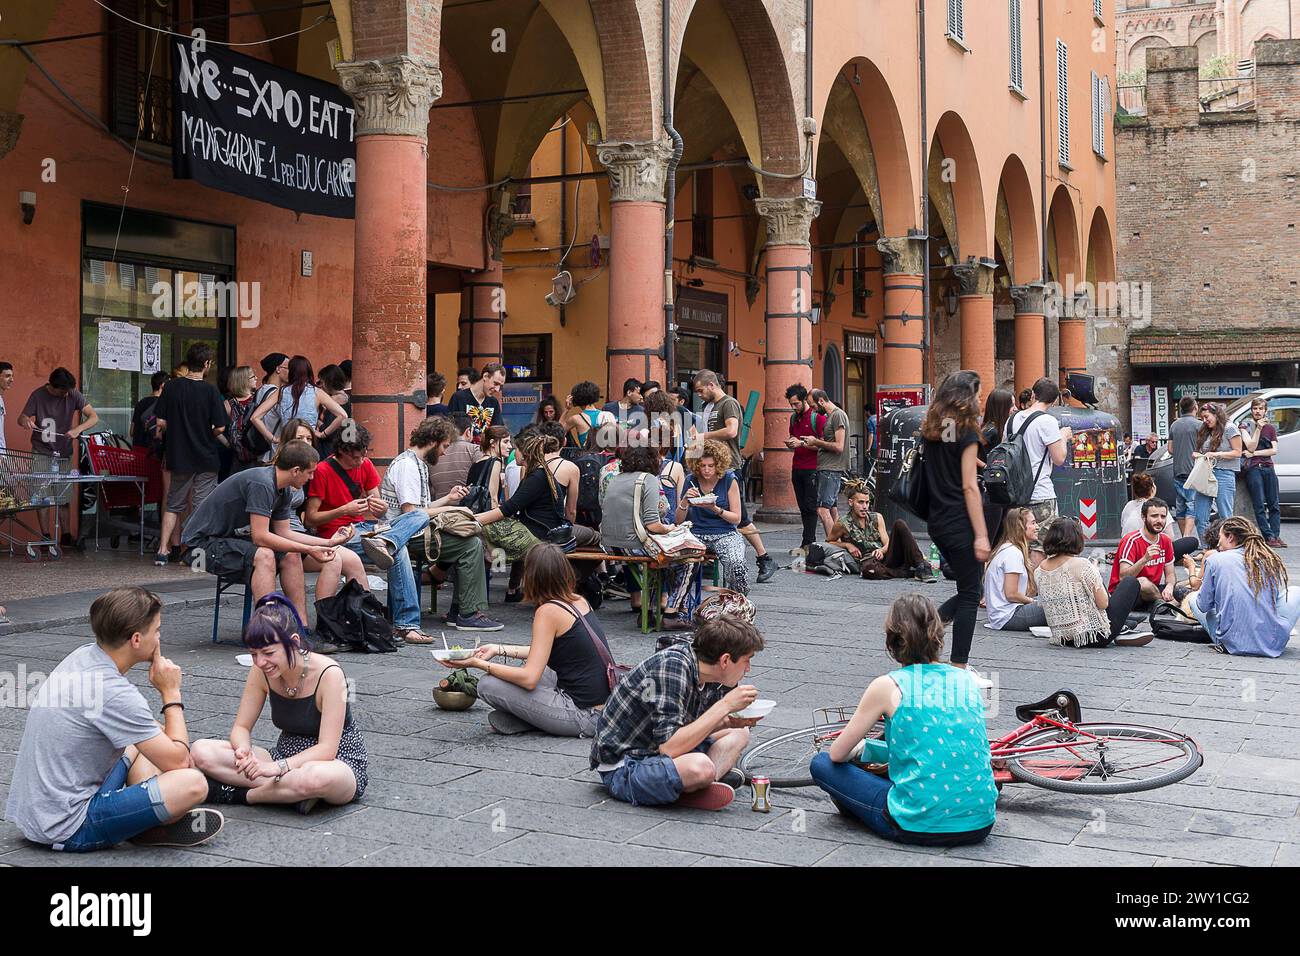 Vie estudiantine a Bologna - seduti su un terreno quadrato | vita studentesca un Bologna - Assis sur les pavés d'une Place de la cité Foto Stock